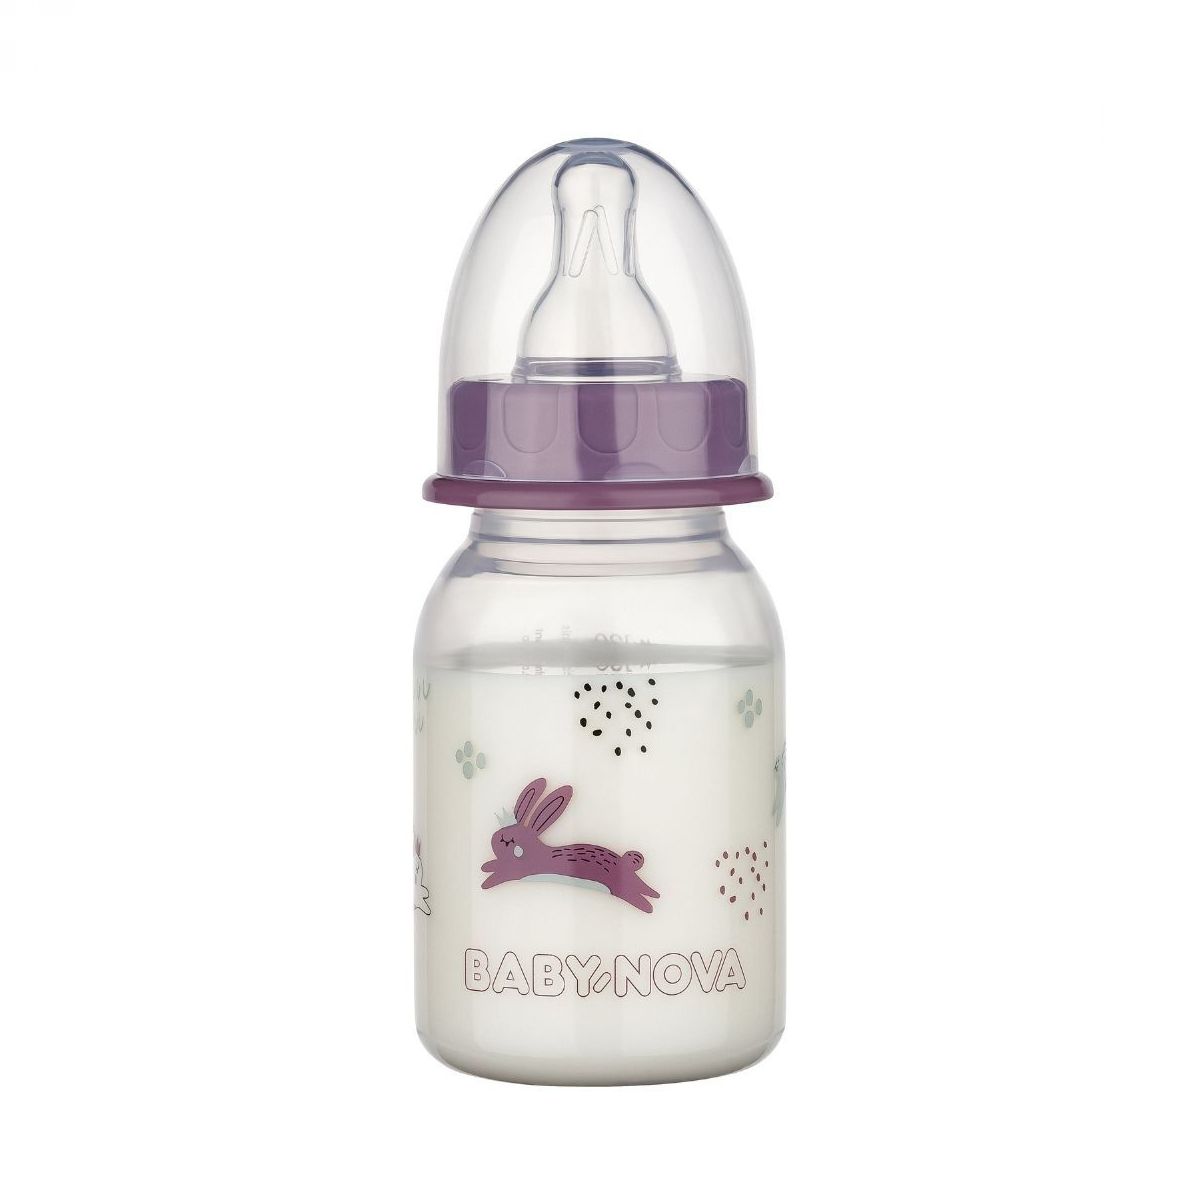 Baby- Nova zajec pp steklenicka 120ml